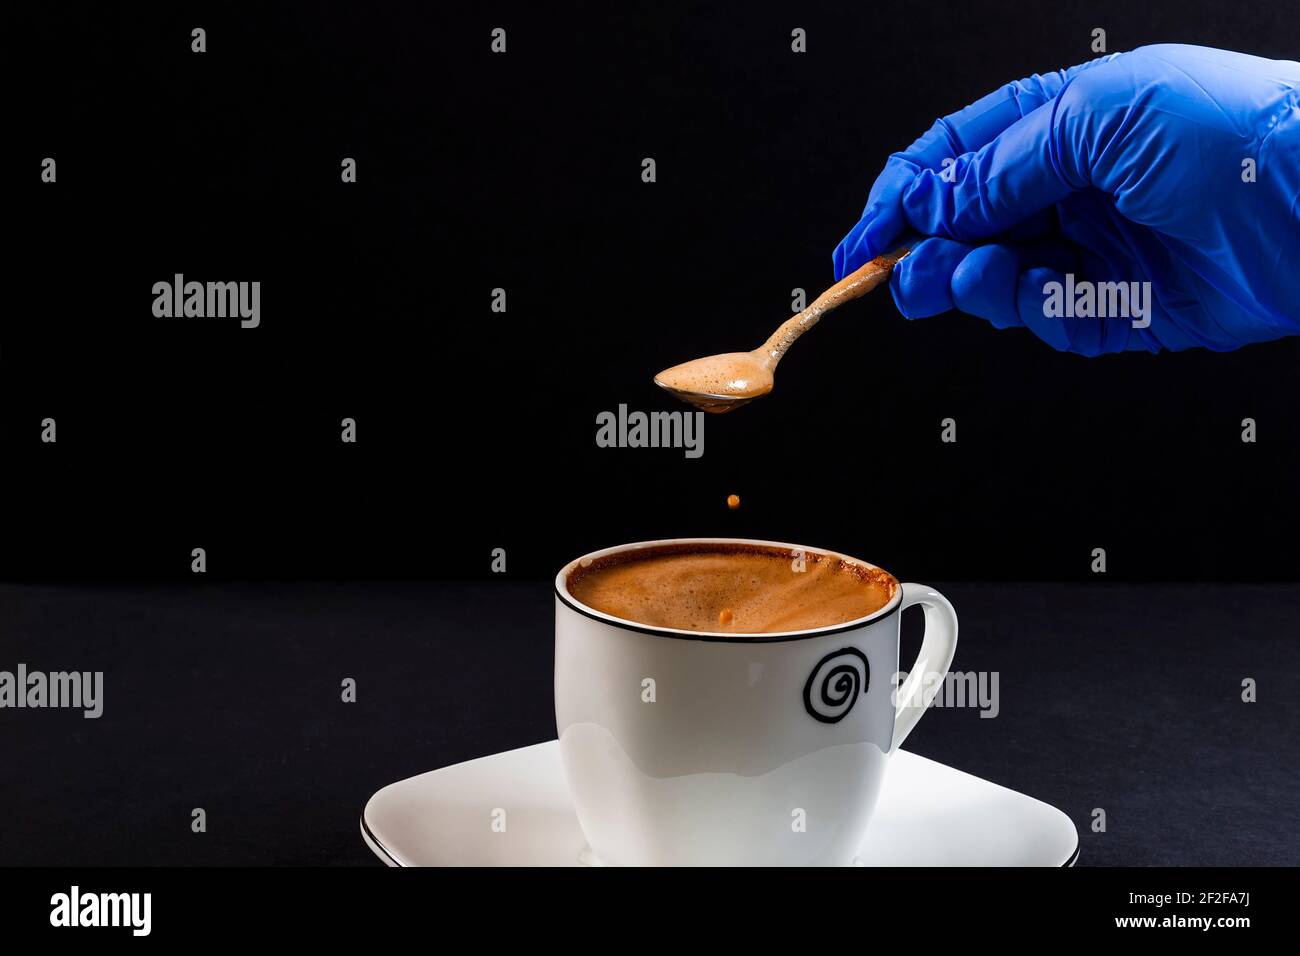 Tropfen Kaffee mit Milch, die aus einem Löffel fällt Von der Hand einer Person mit Latex gehalten Handschuh.Dies ist ein horizontales Format Foto auf schwarzer Rückseite aufgenommen Stockfoto